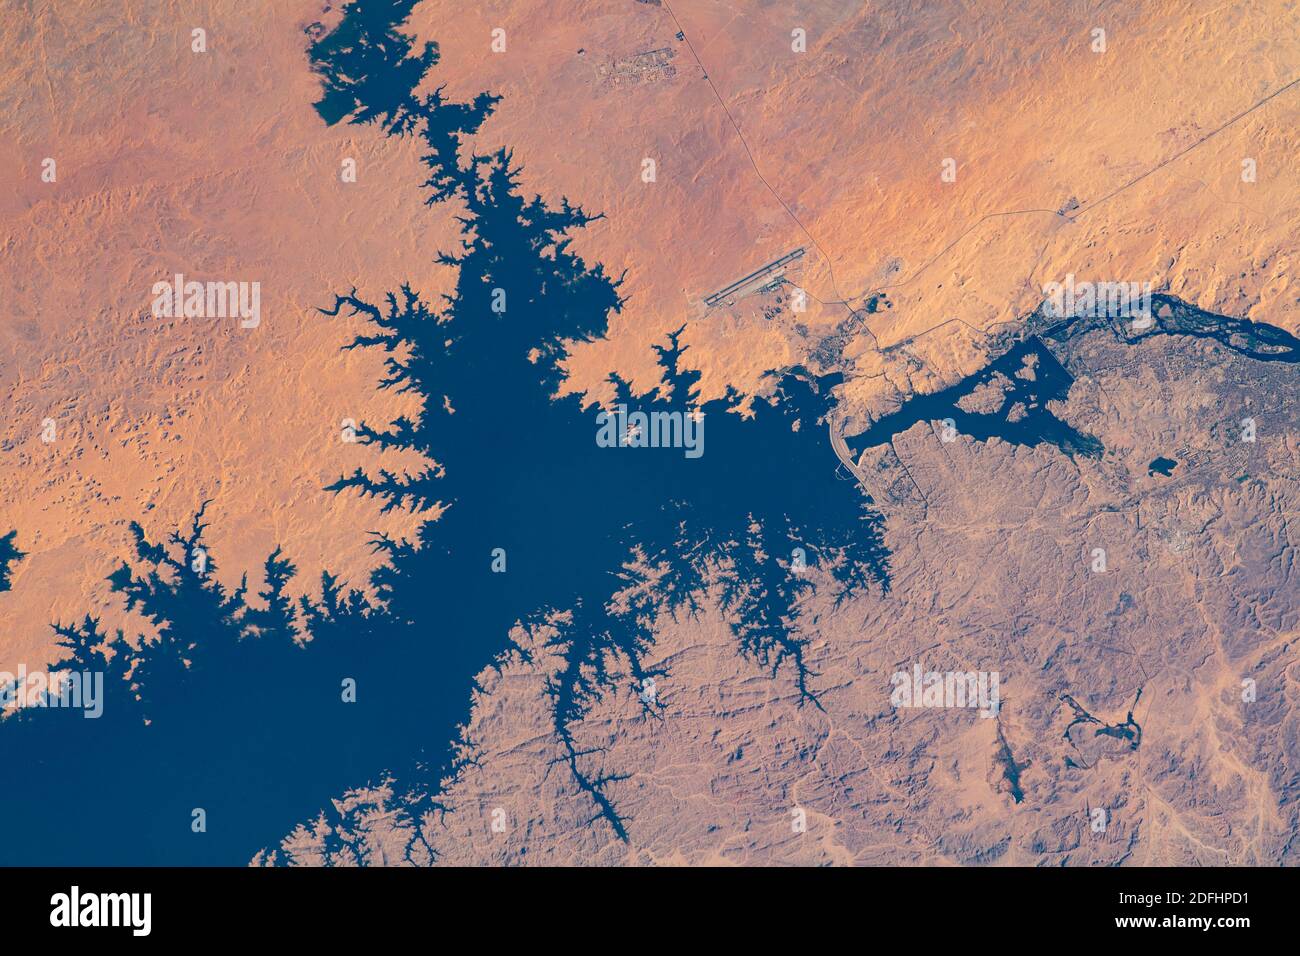 ÉGYPTE - 26 novembre 2020 - en photo de la Station spatiale internationale, le barrage d'Assouan en Égypte sépare le lac Nasser du Nil - photo : GE Banque D'Images